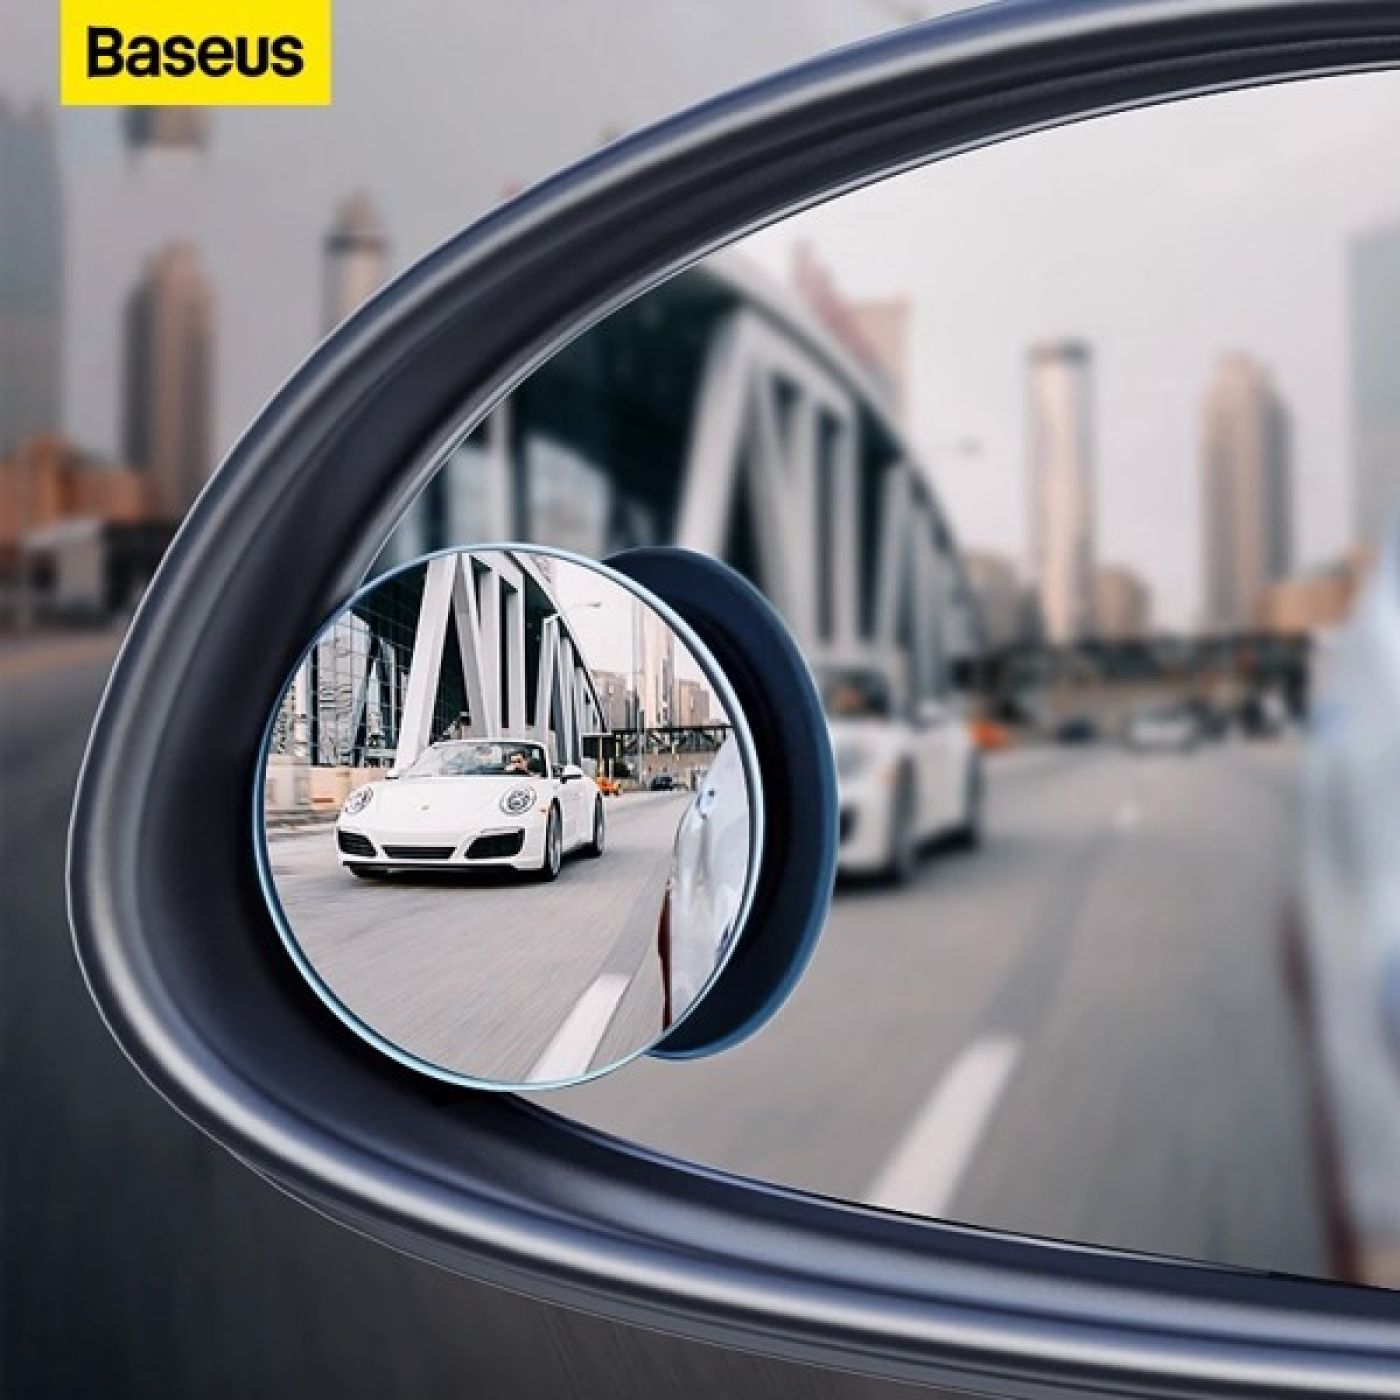 Gương cầu lồi mở rộng góc nhìn, chống điểm mù cho xe hơi Baseus LV466 Full View Blind Spot Rearview